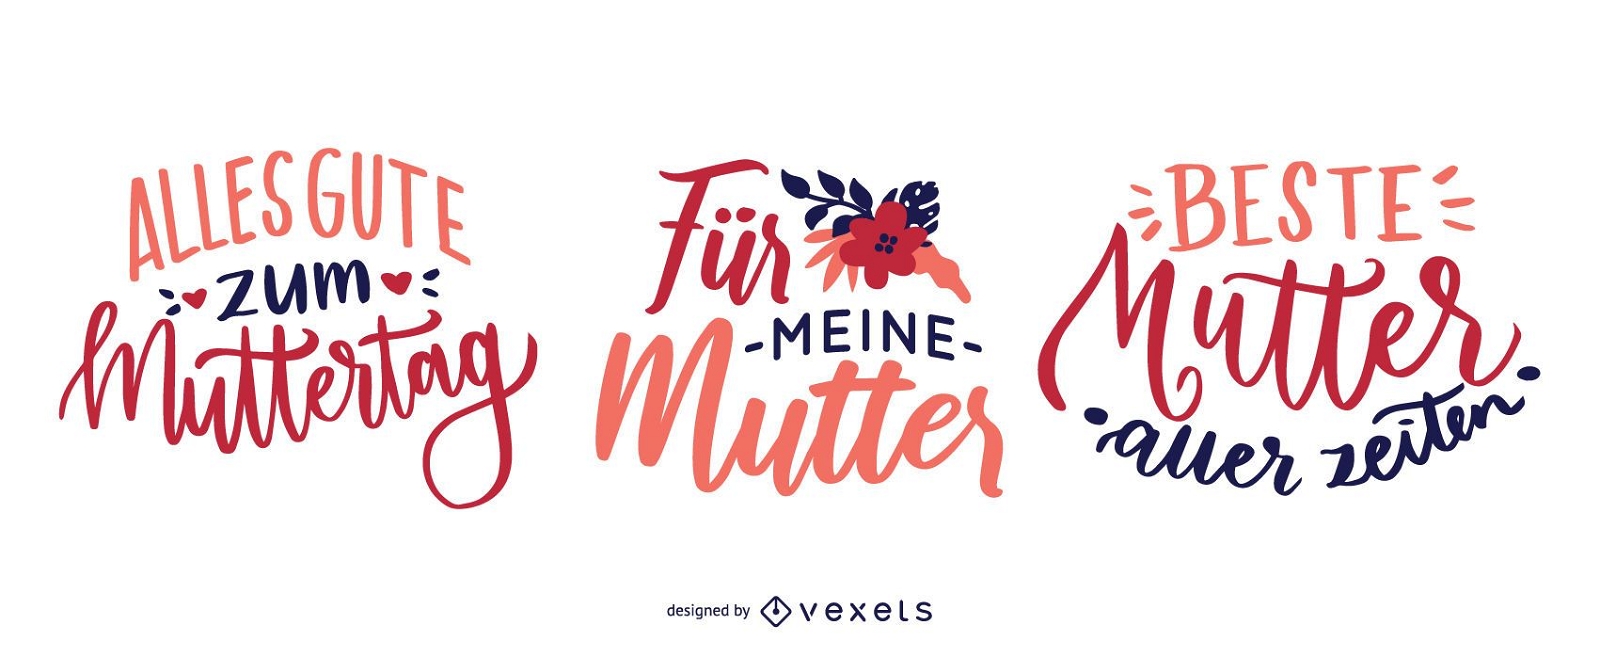 Diseño de letras del día de la madre alemana